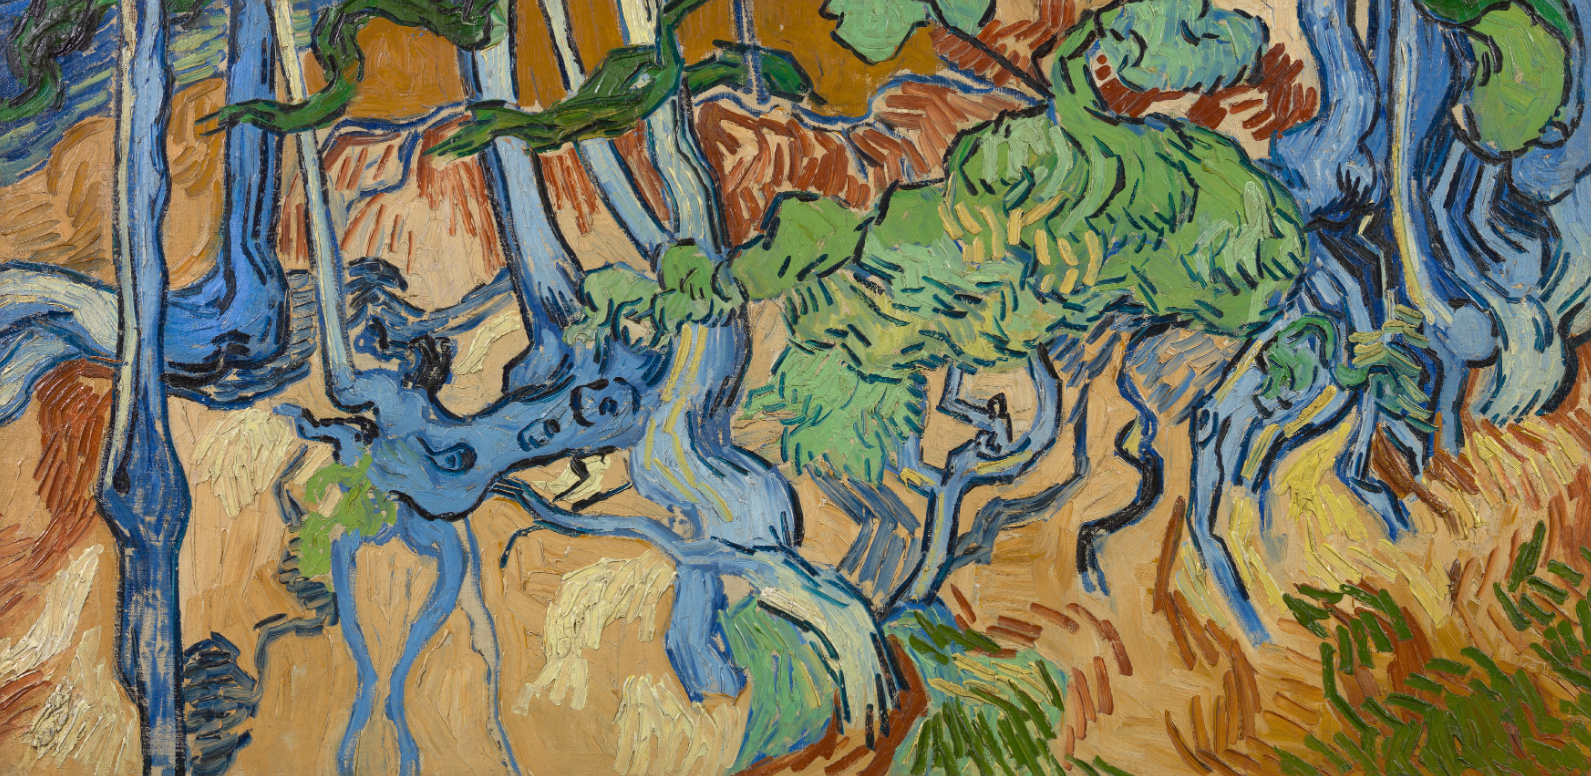 "Cháy vé" tại triển lãm Van Gogh, có người vượt 1.000km vẫn không được vào xem: Nhìn lại cuộc đời bạc mệnh của "thiên tài đau khổ" và những tranh cãi về bức tranh cuối cùng - Ảnh 5.